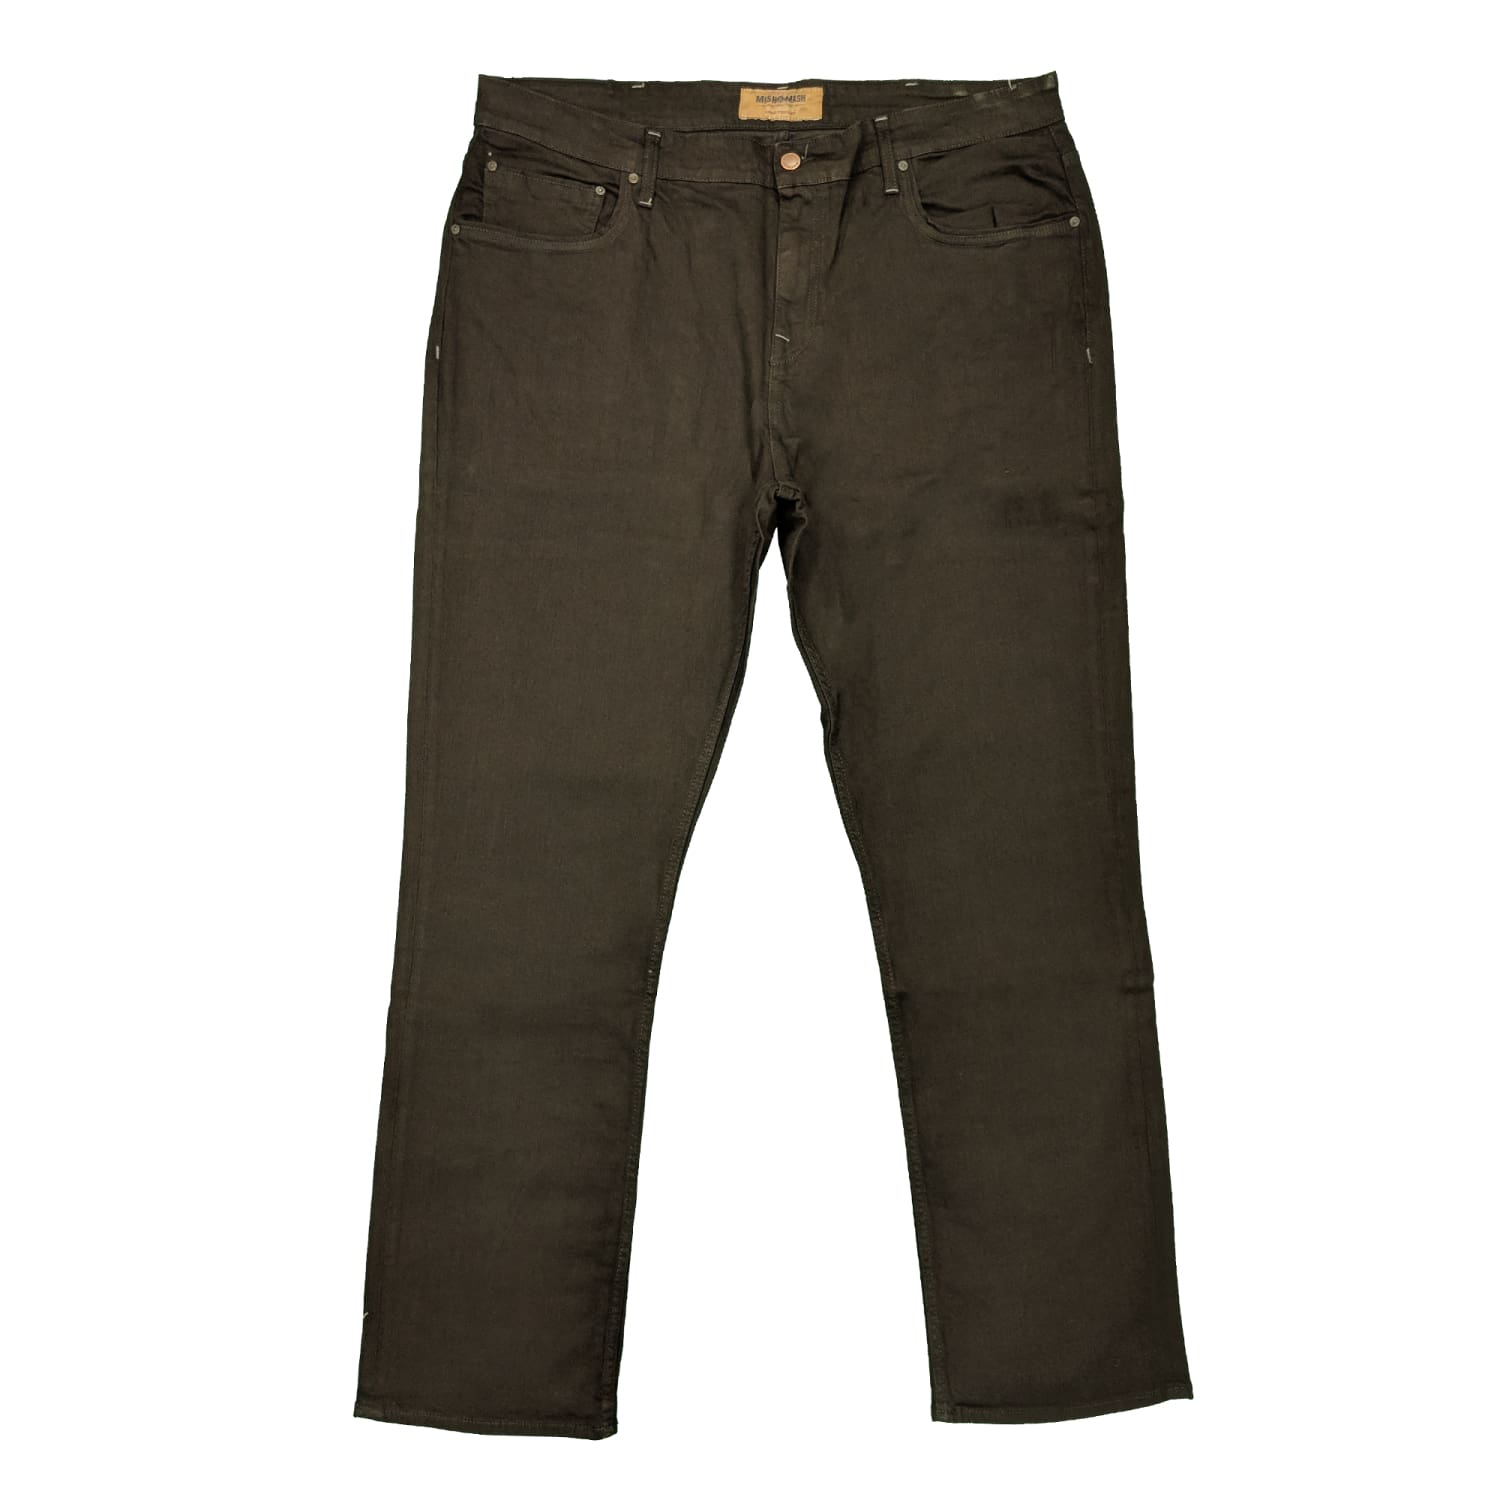 Mish Mash Jeans - 14357 - 1988 Bronx Black 1